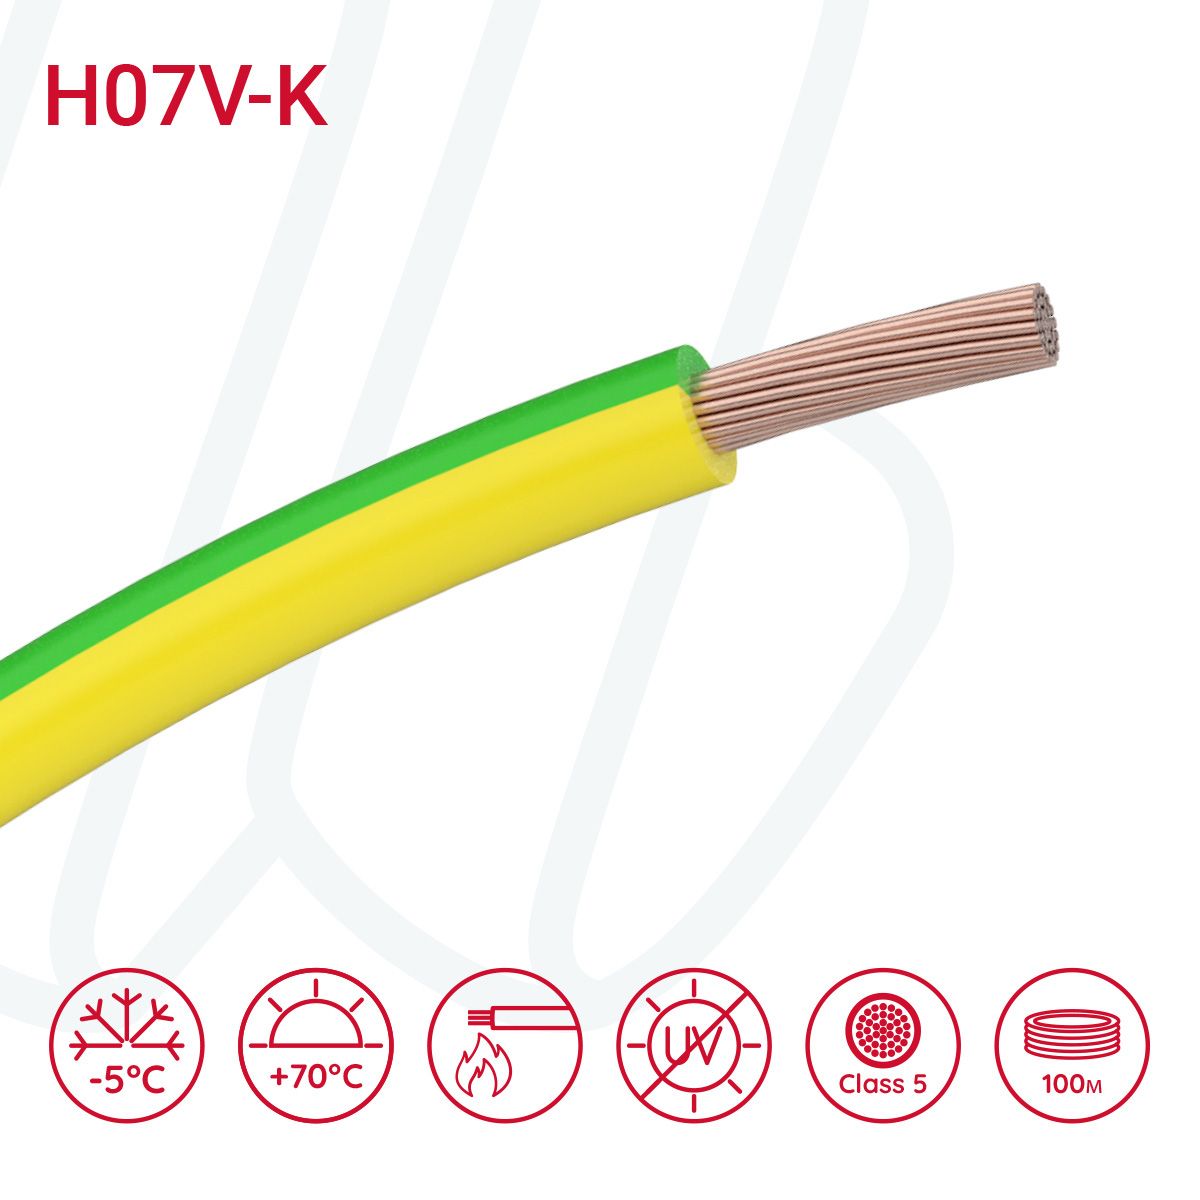 Провід монтажний гнучкий H07V-K 4 мм² жовто-зелений, 01, 4